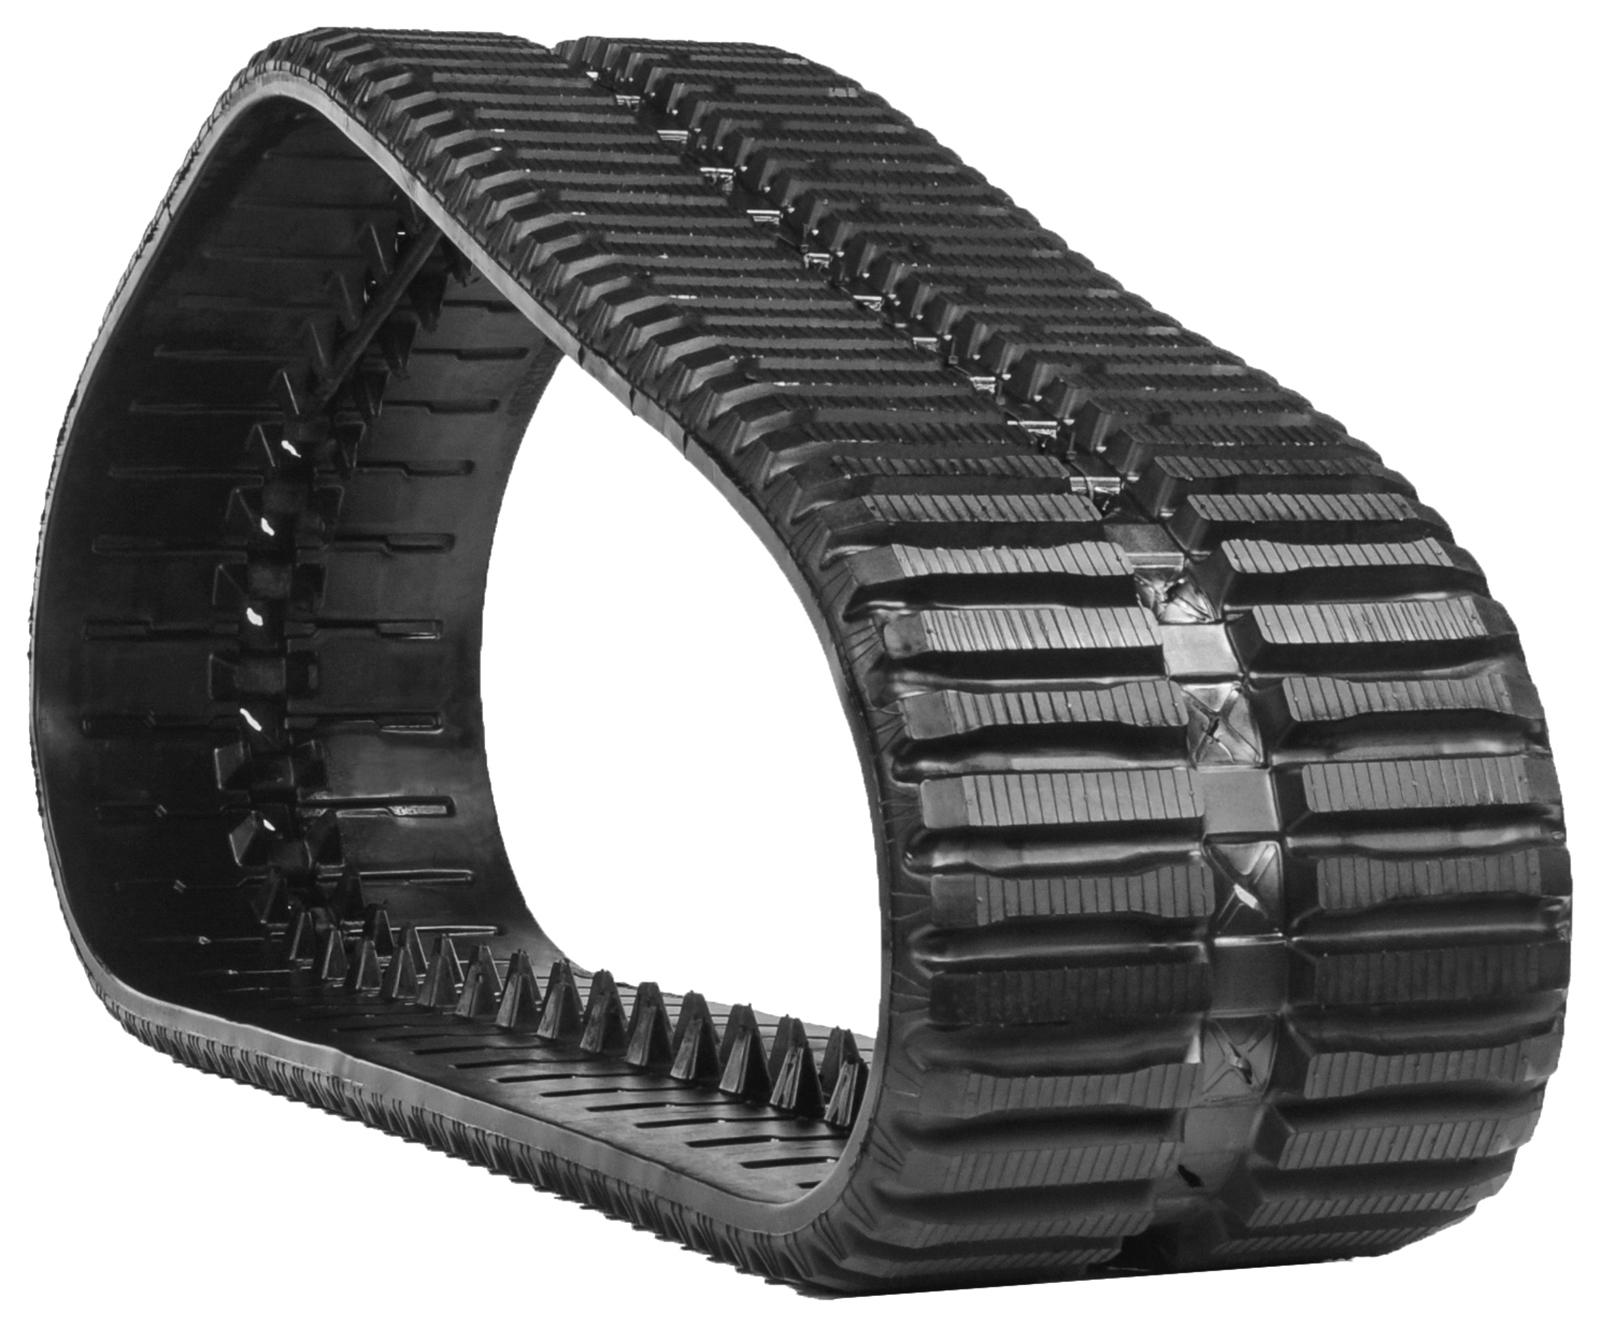 set of 2 18" heavy duty multi-bar pattern rubber track (450x86bx60)